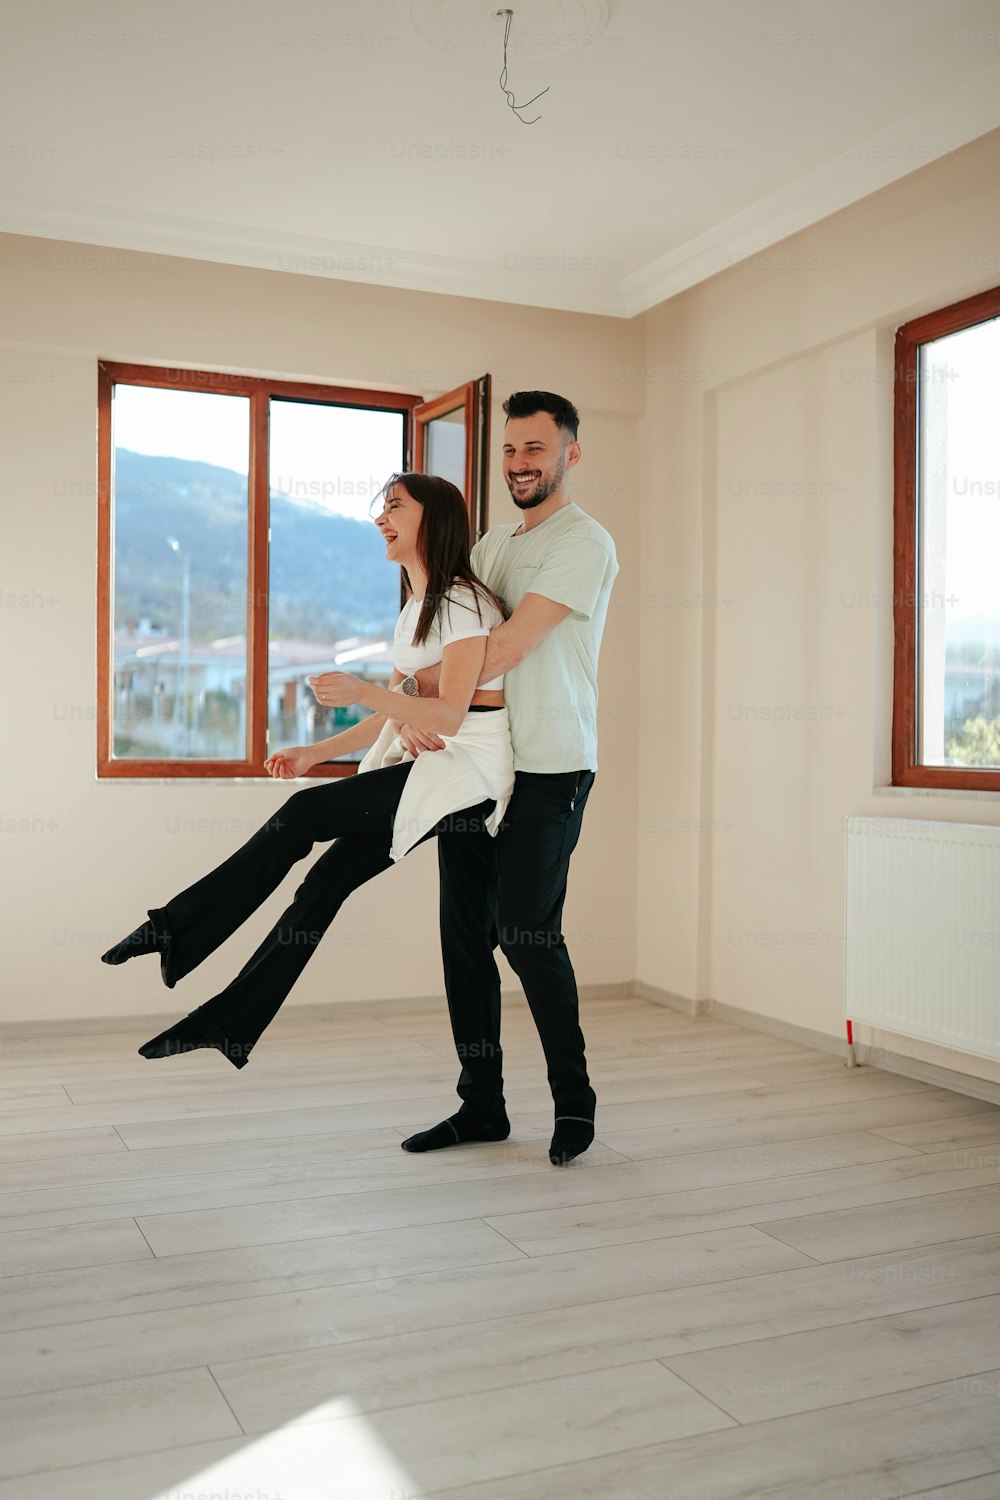 Un uomo e una donna ballano in una stanza